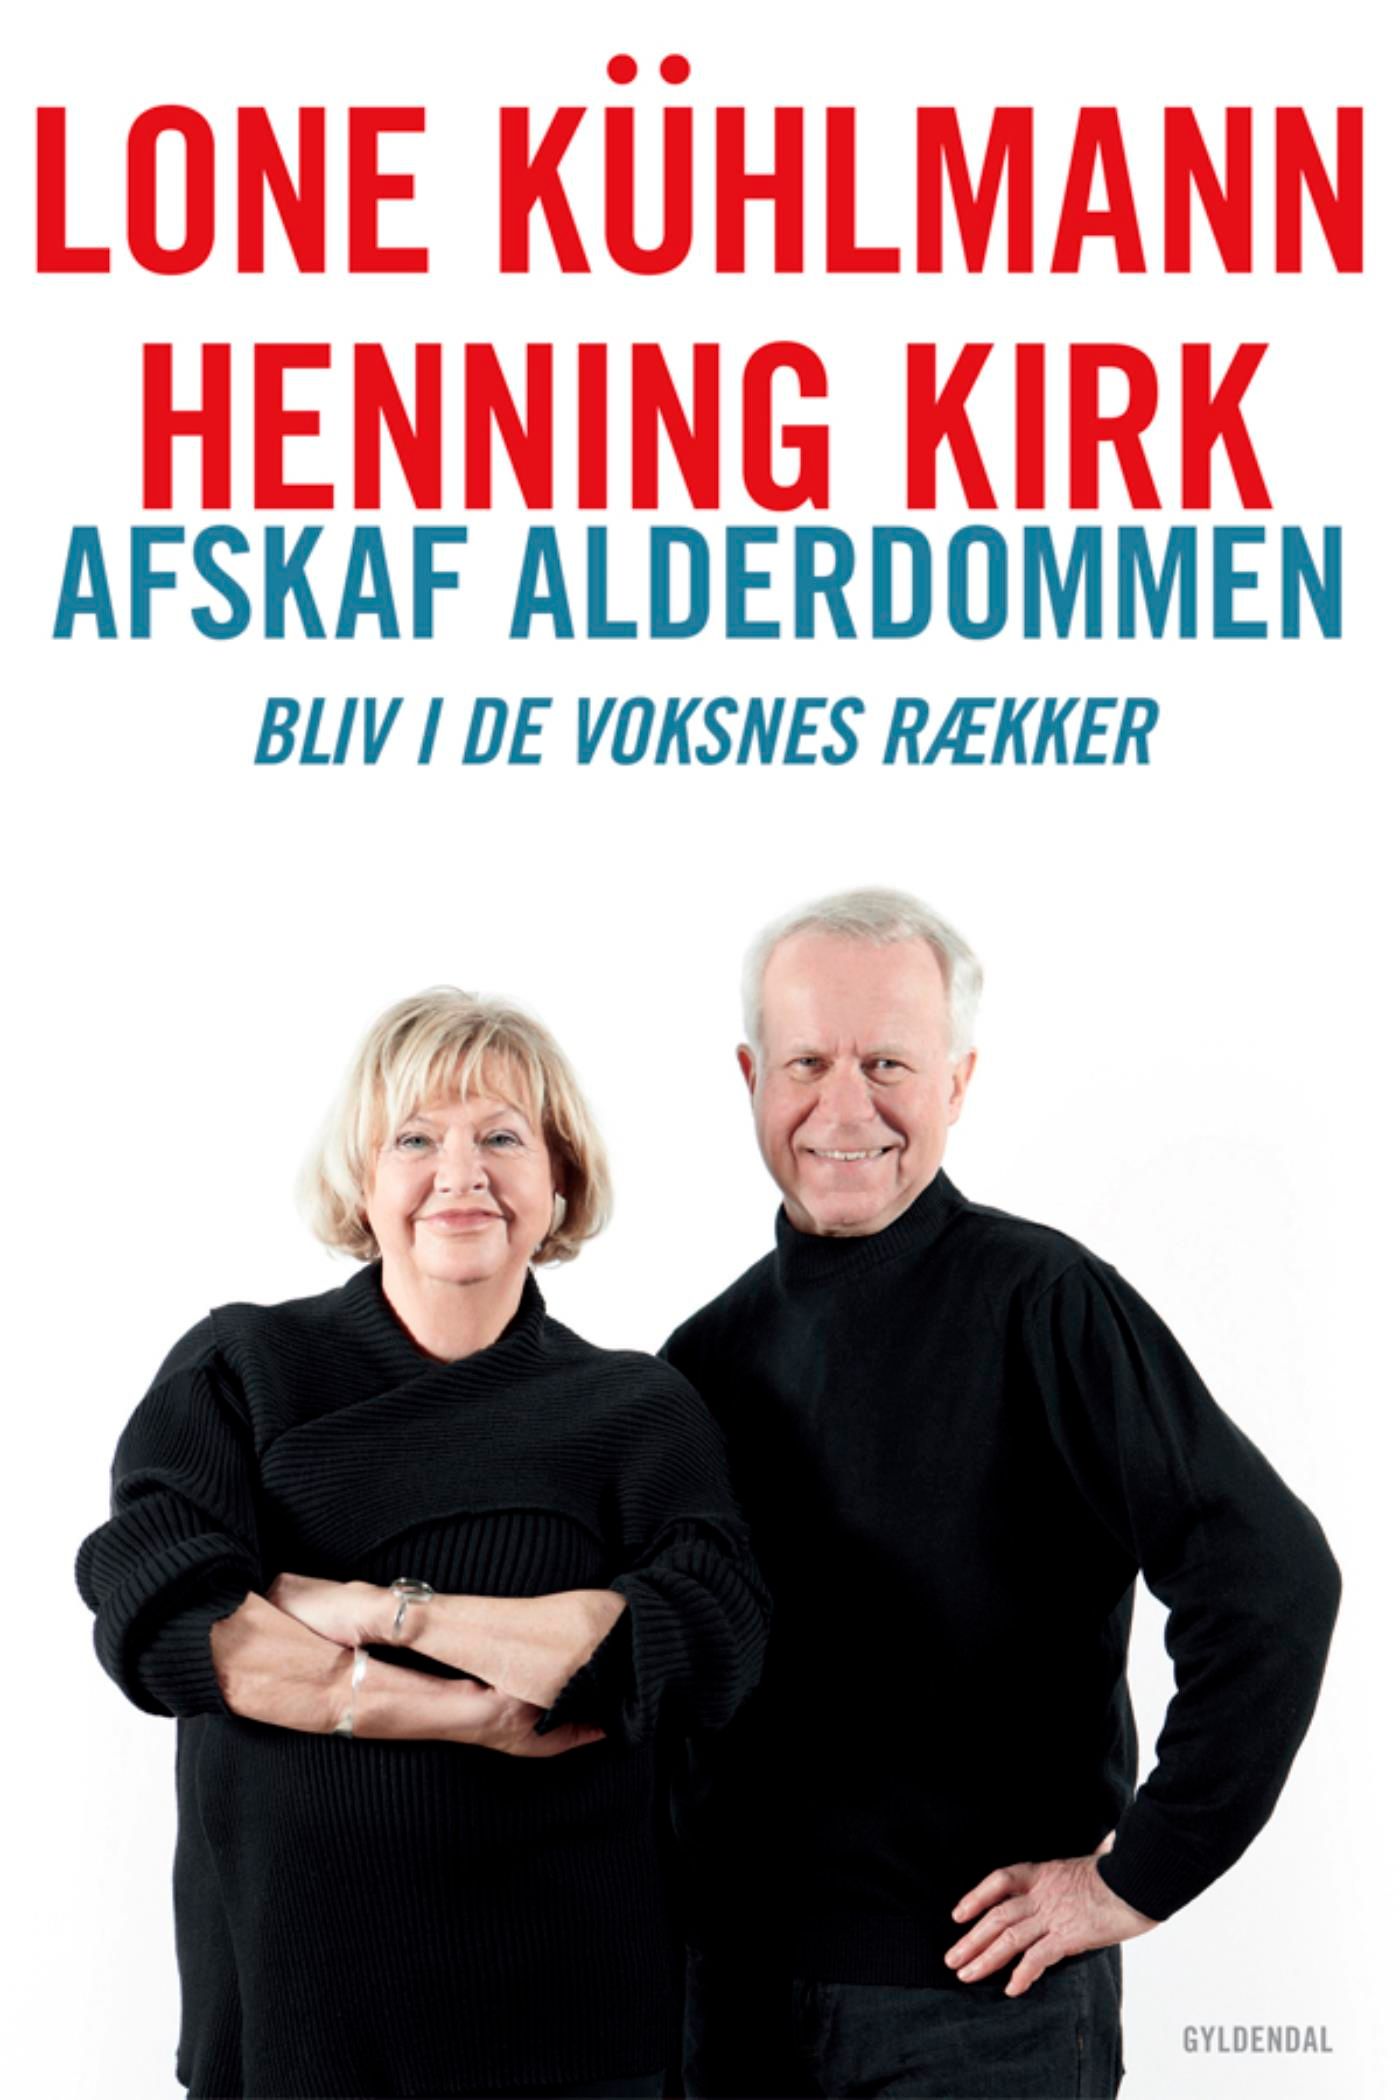 Afskaf alderdommen, eBook by Henning Kirk, Lone Kühlmann